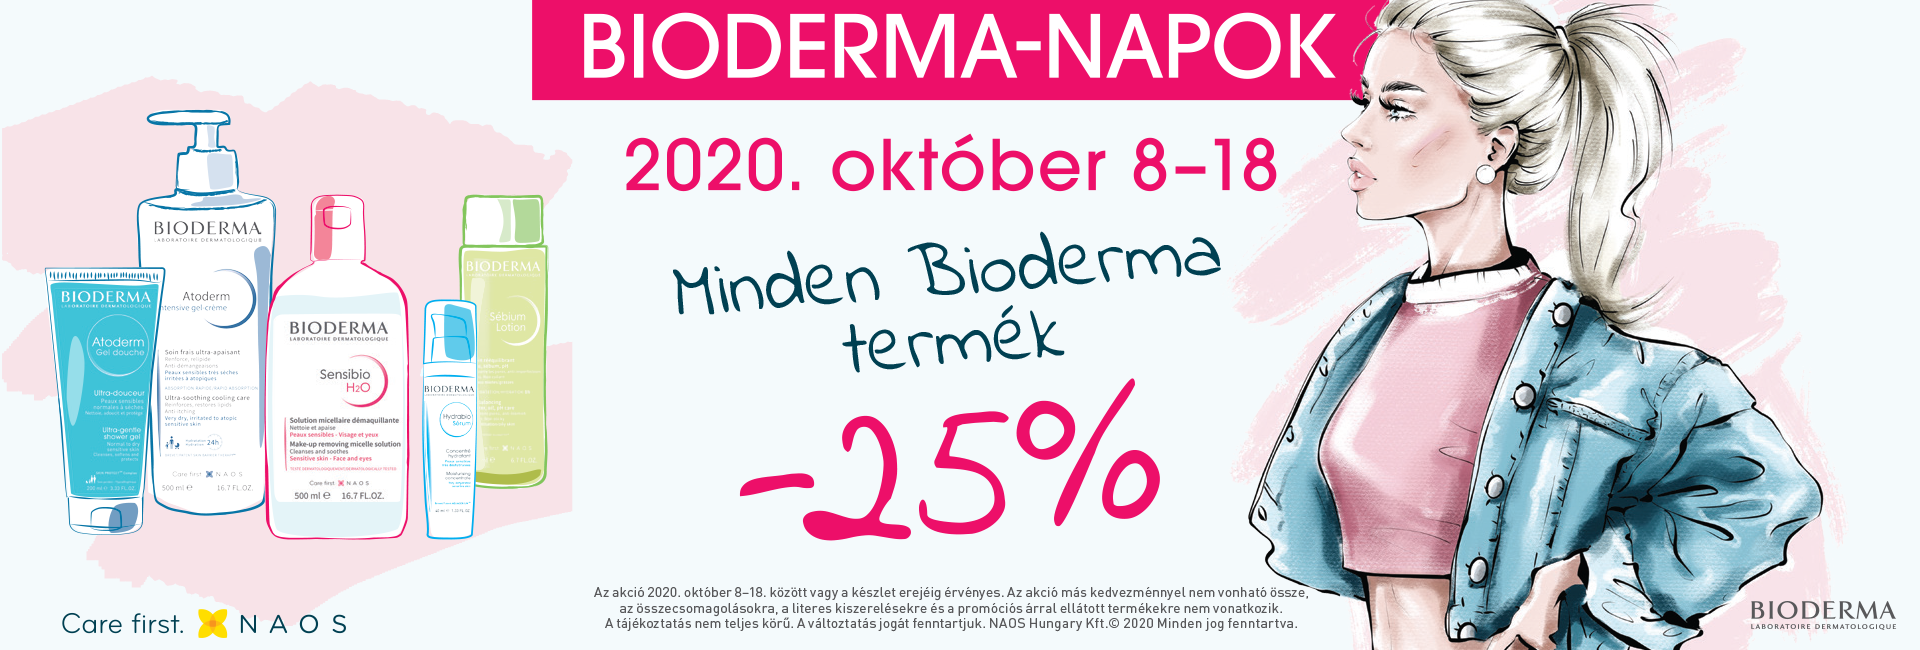 2020. október 5-19. között minden Bioderma terméket 25% kedvezménnyel kínálunk!